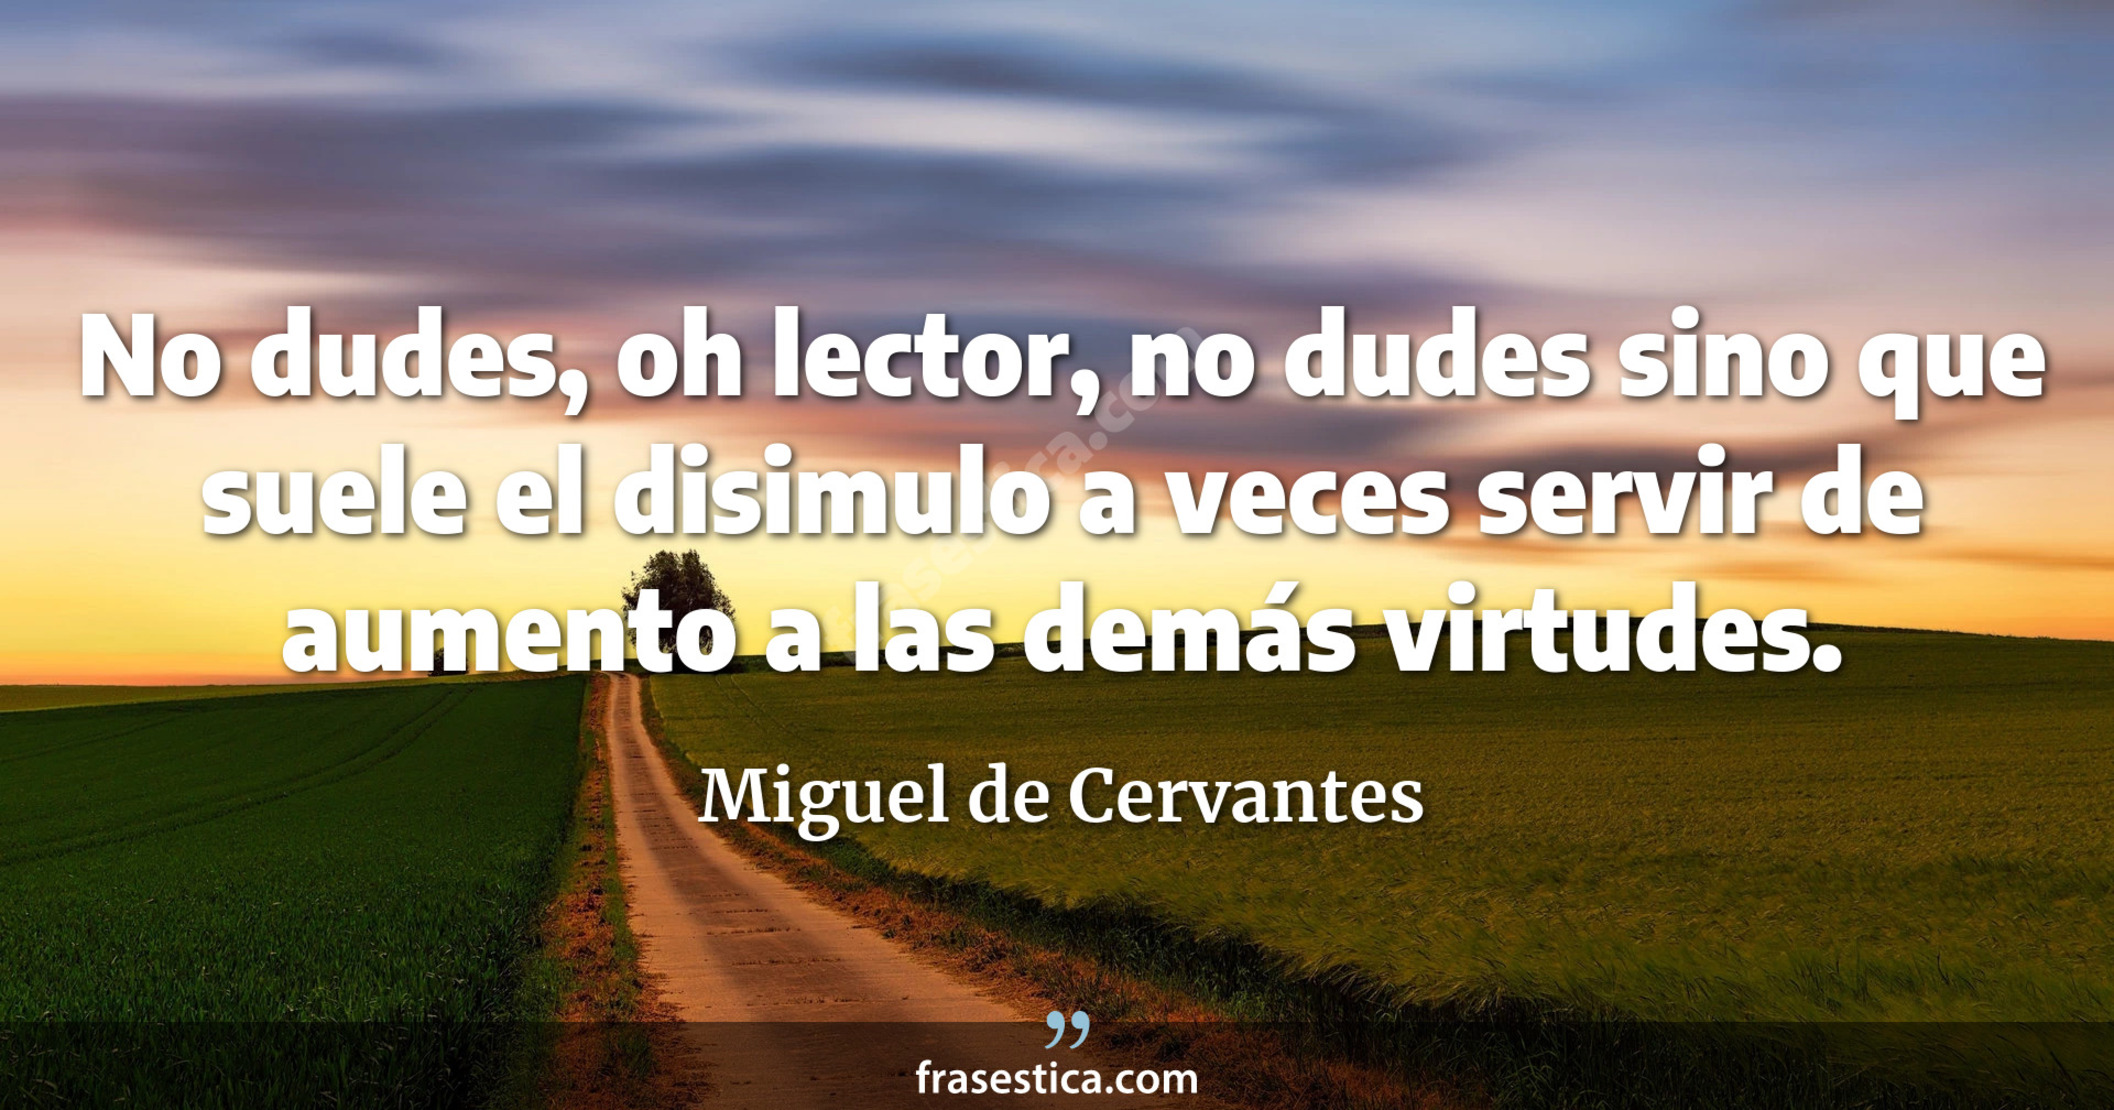 No dudes, oh lector, no dudes sino que suele el disimulo a veces servir de aumento a las demás virtudes. - Miguel de Cervantes